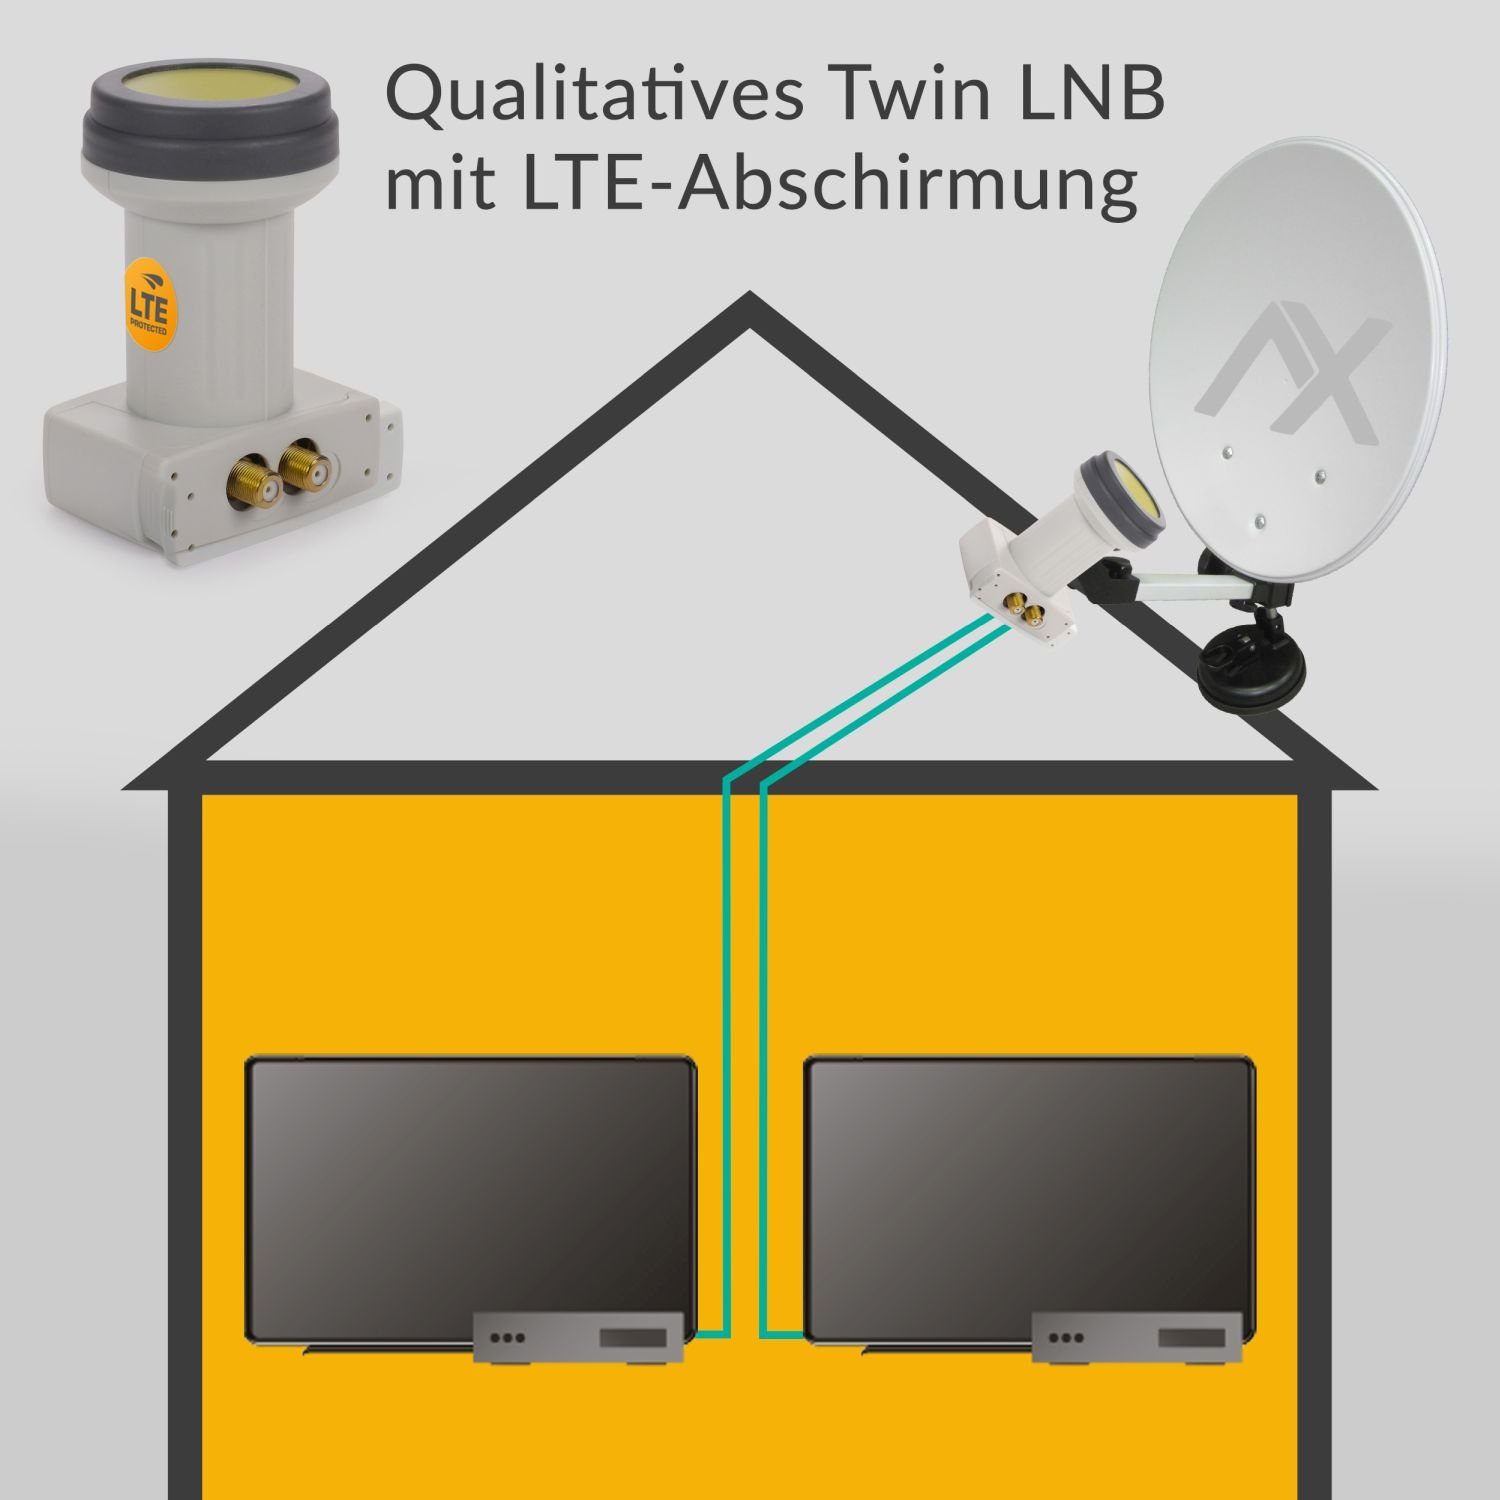 AX Mimic Sun hitzebeständig, LTE-Filter, Wetterschutz Twin LNB (kälte- Protect Teilnehmer, mit & Universal-Twin-LNB 0.1dB) 2